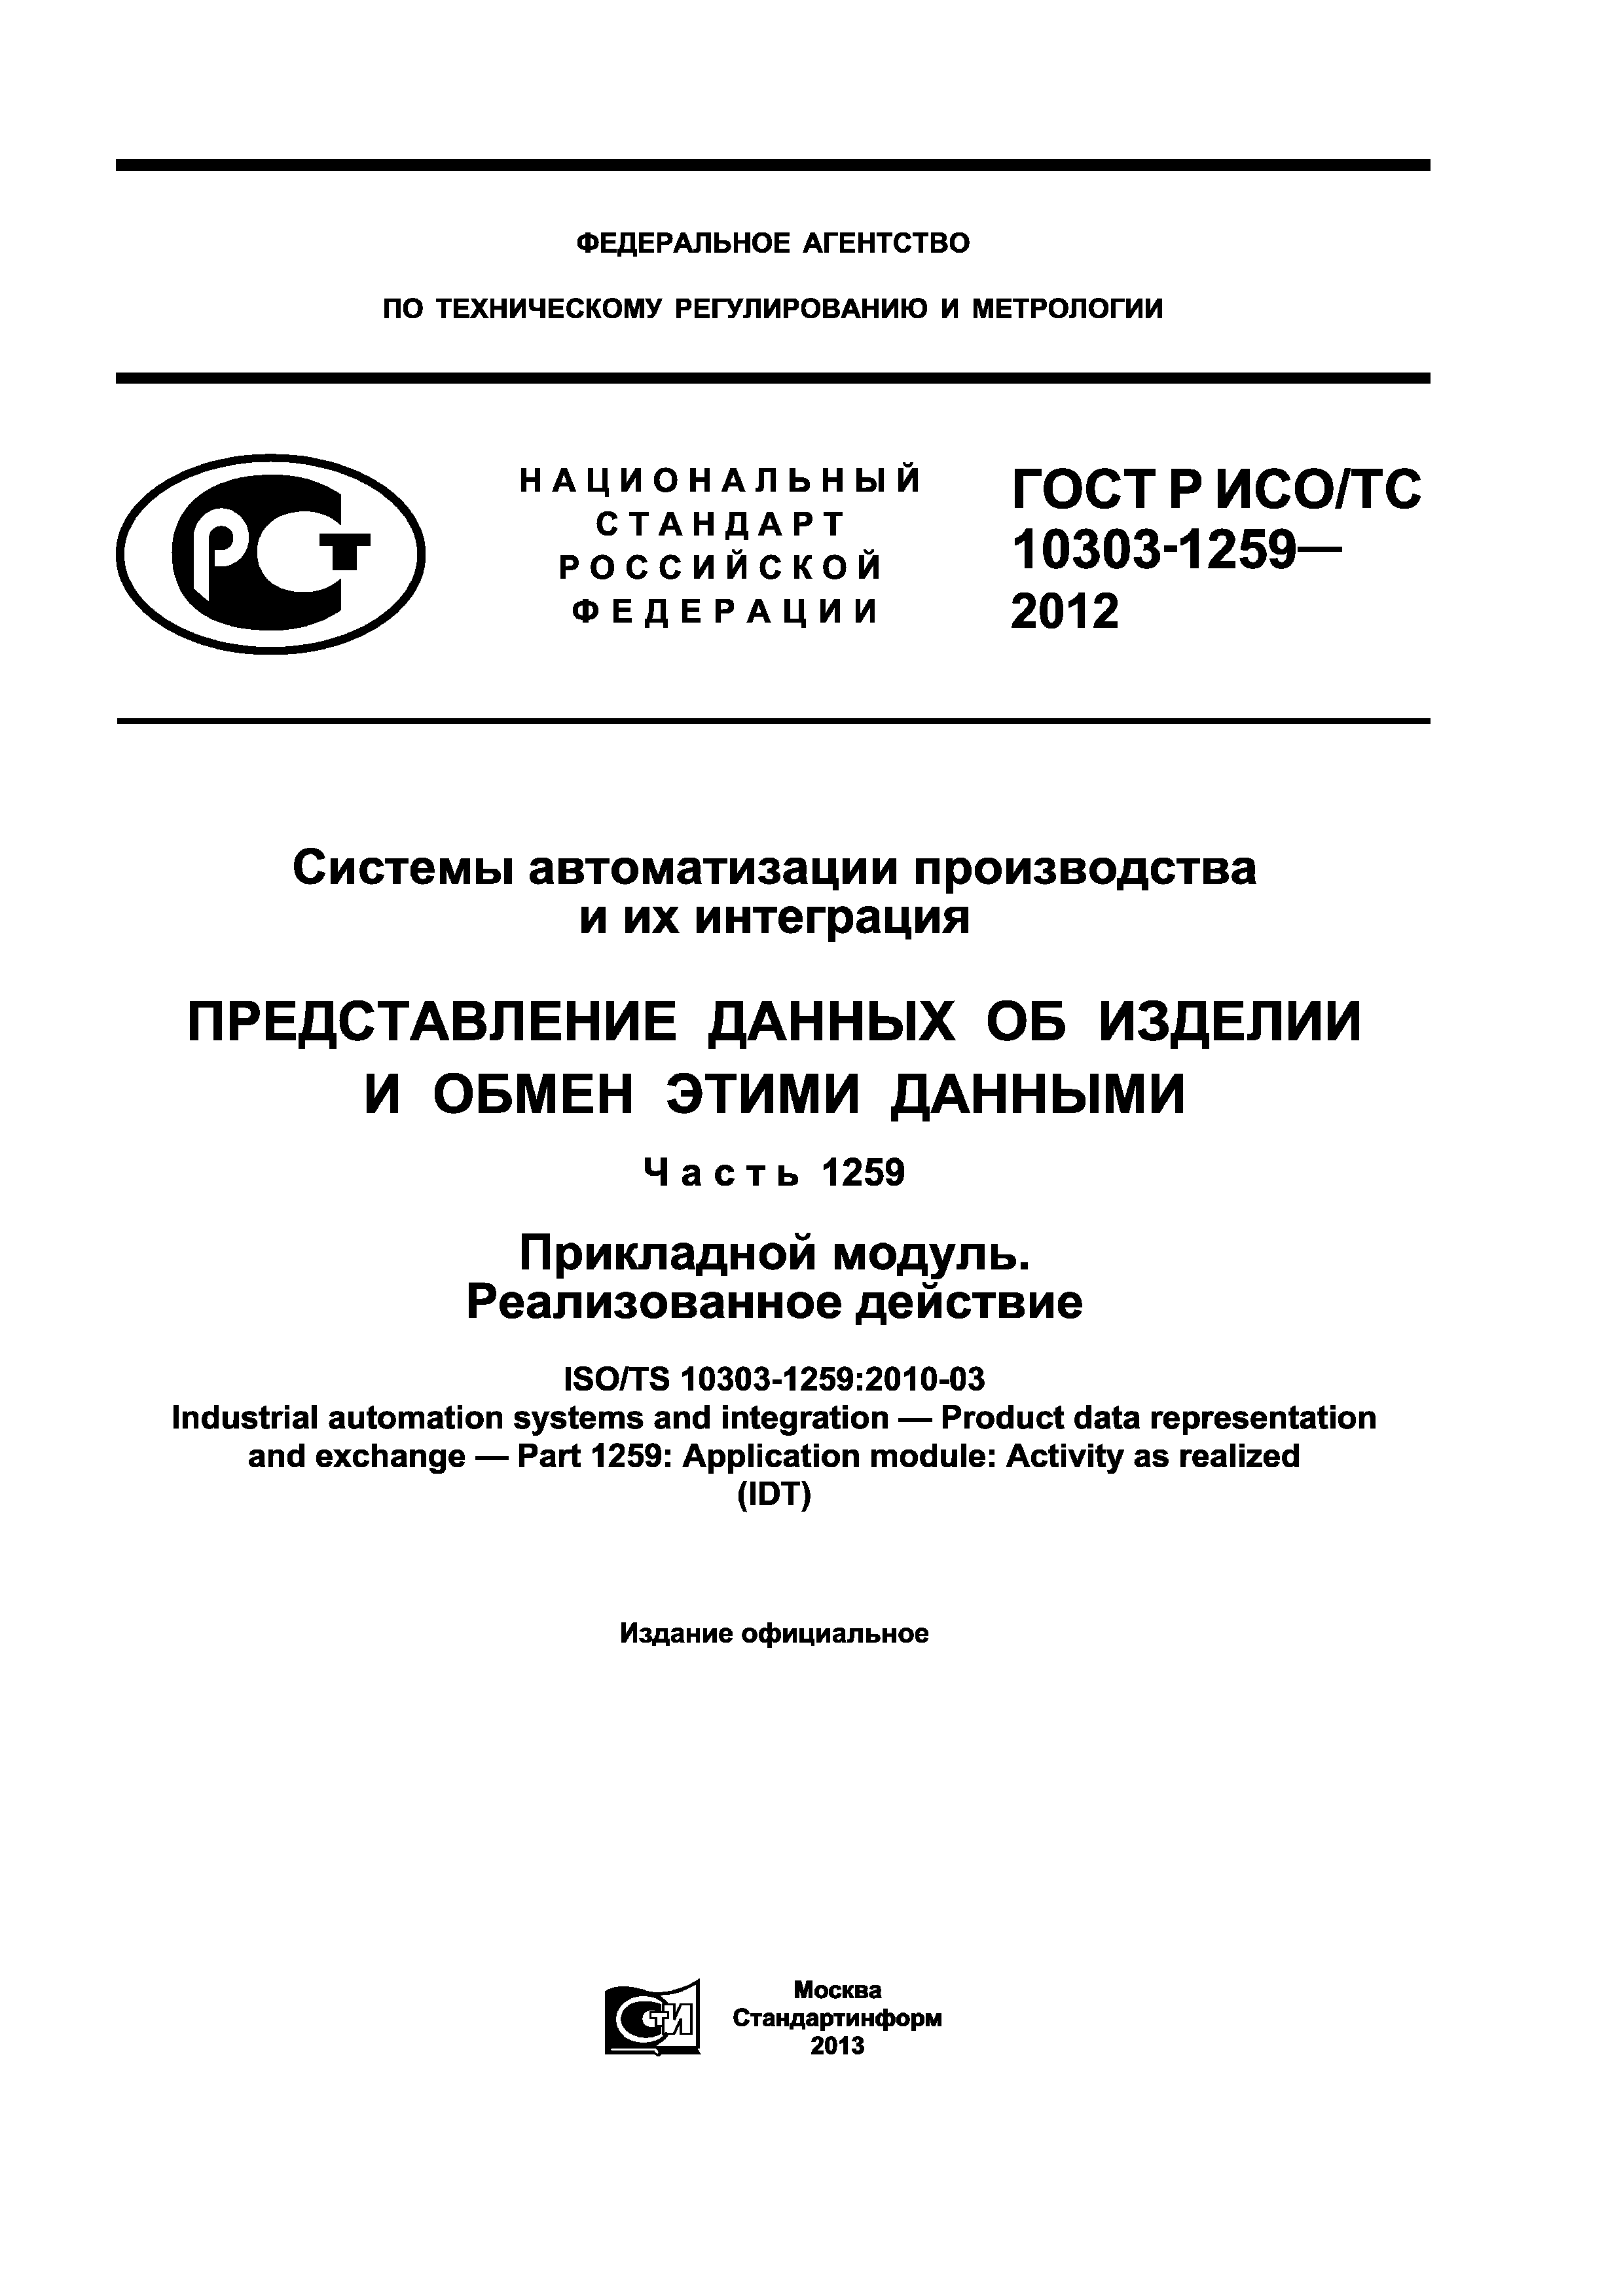 ГОСТ Р ИСО/ТС 10303-1259-2012